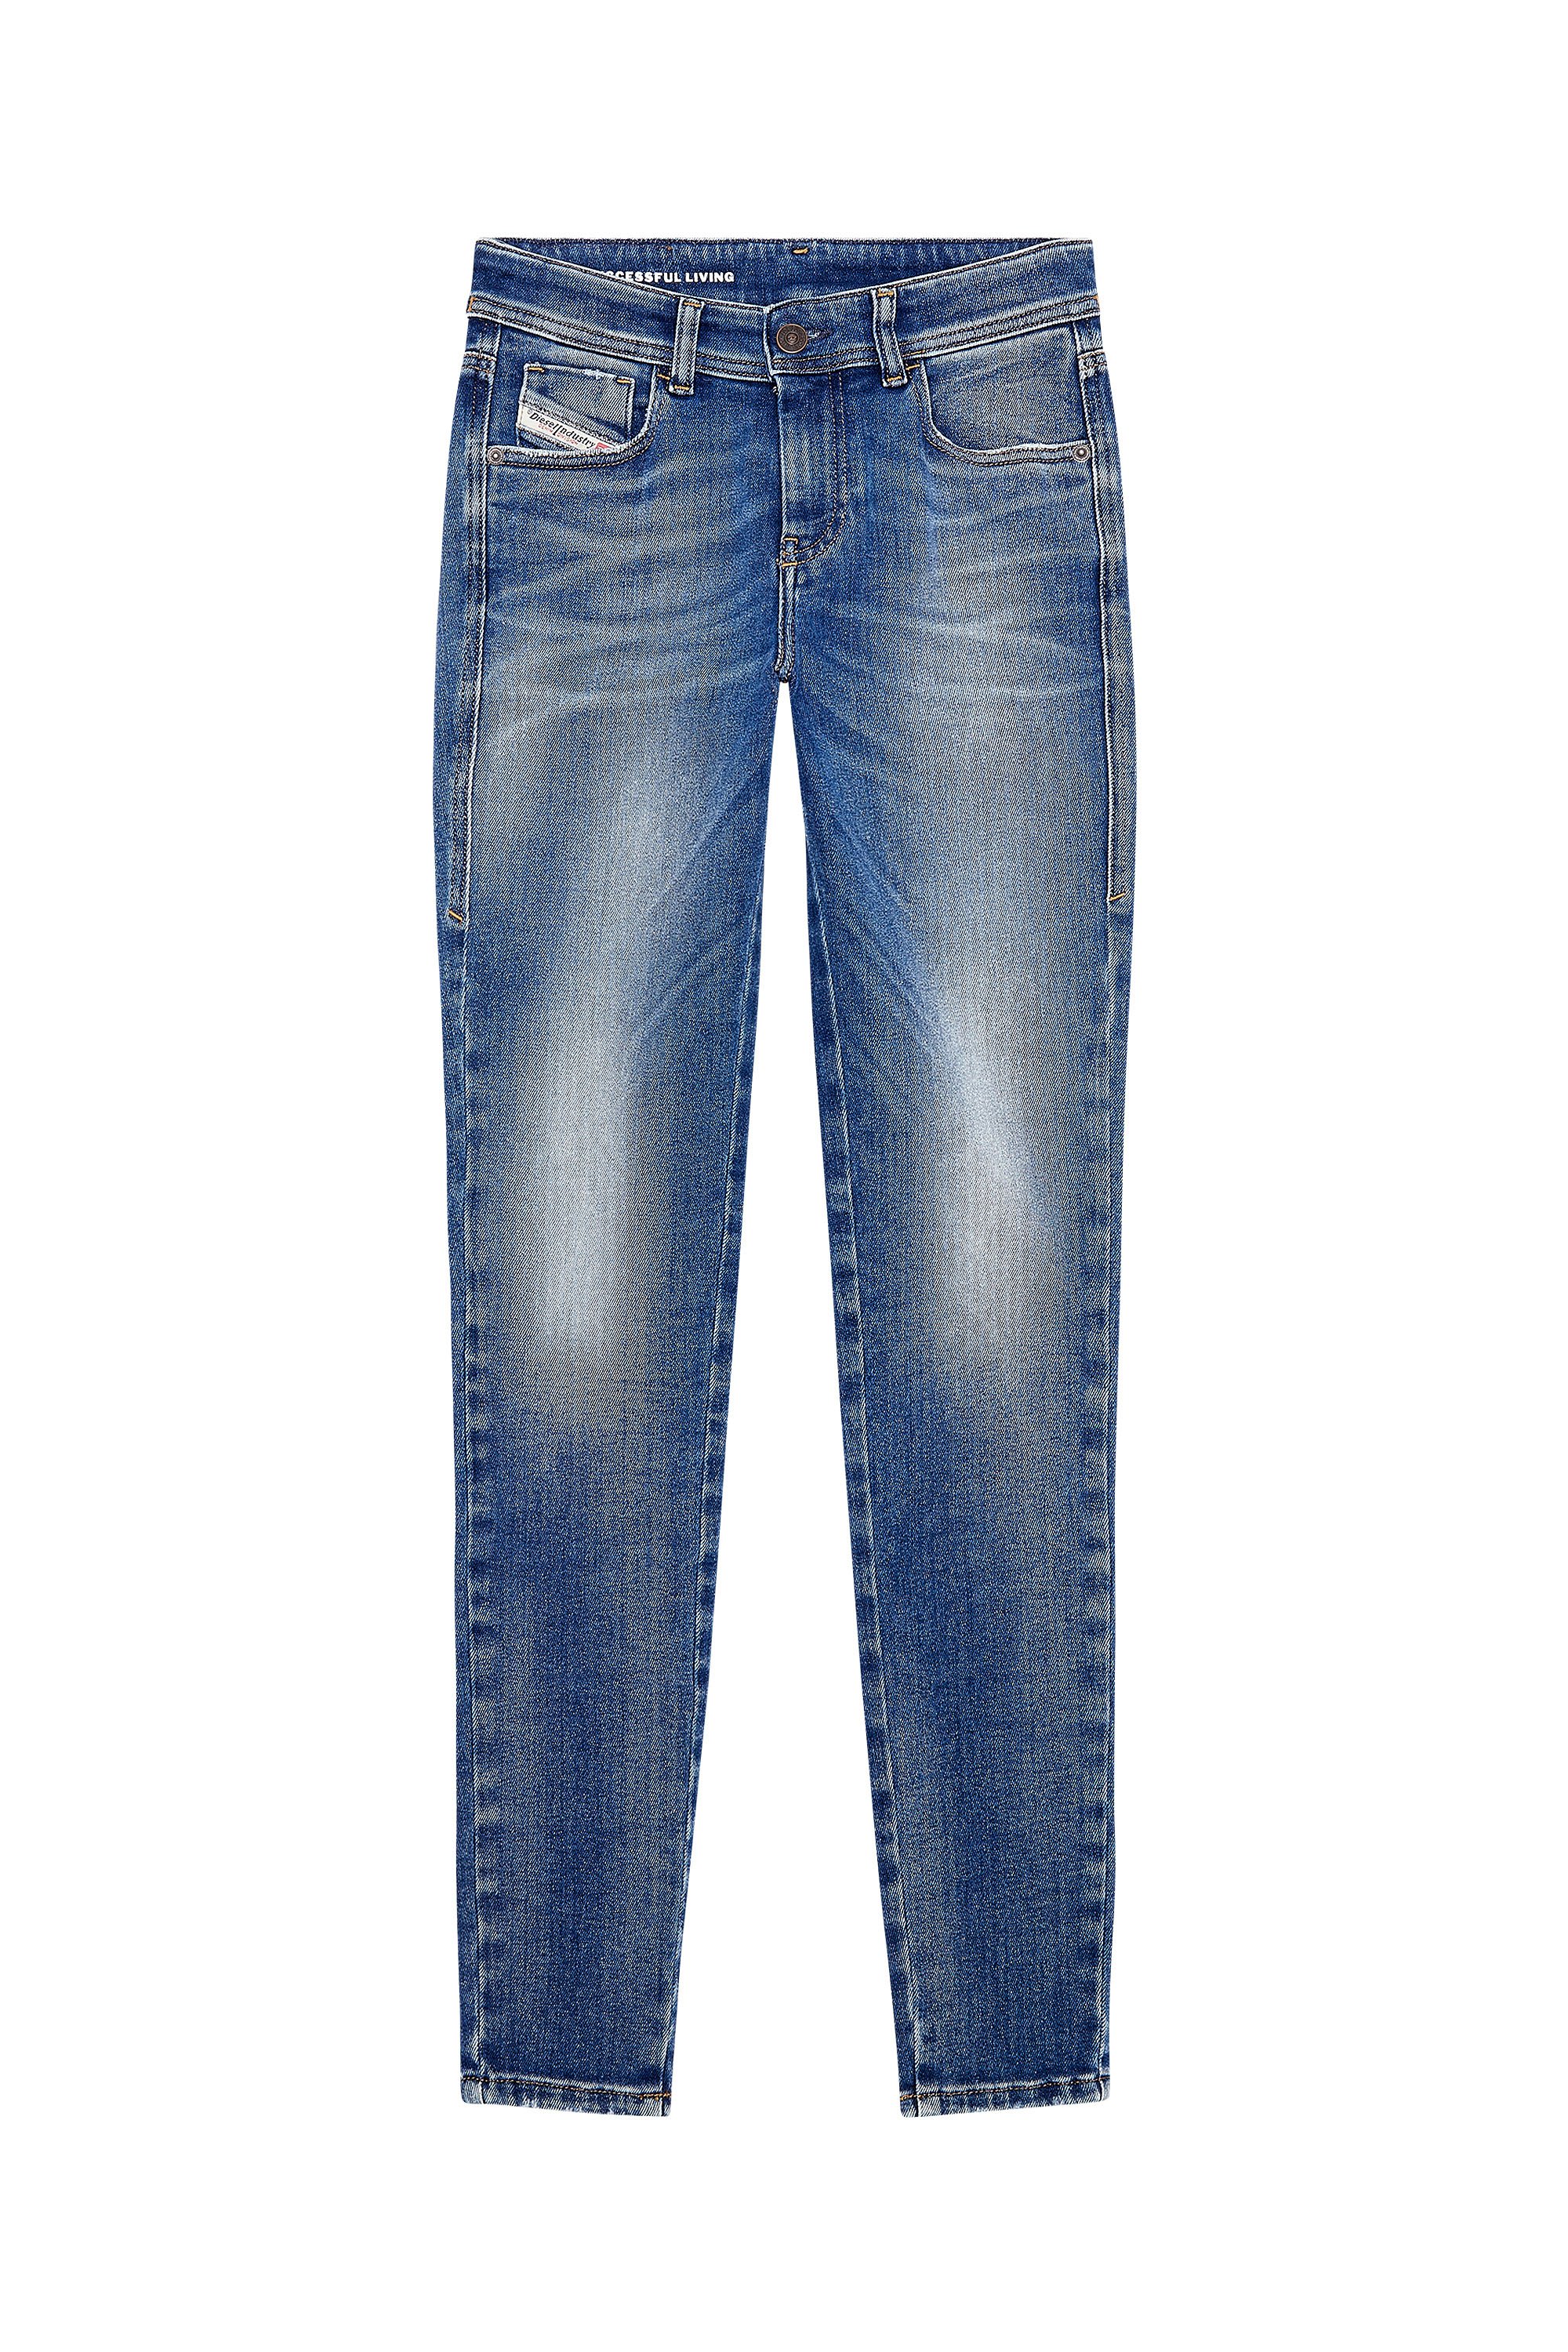 Diesel - Super skinny Jeans 2017 Slandy 09H90, Medium blue - Image 5